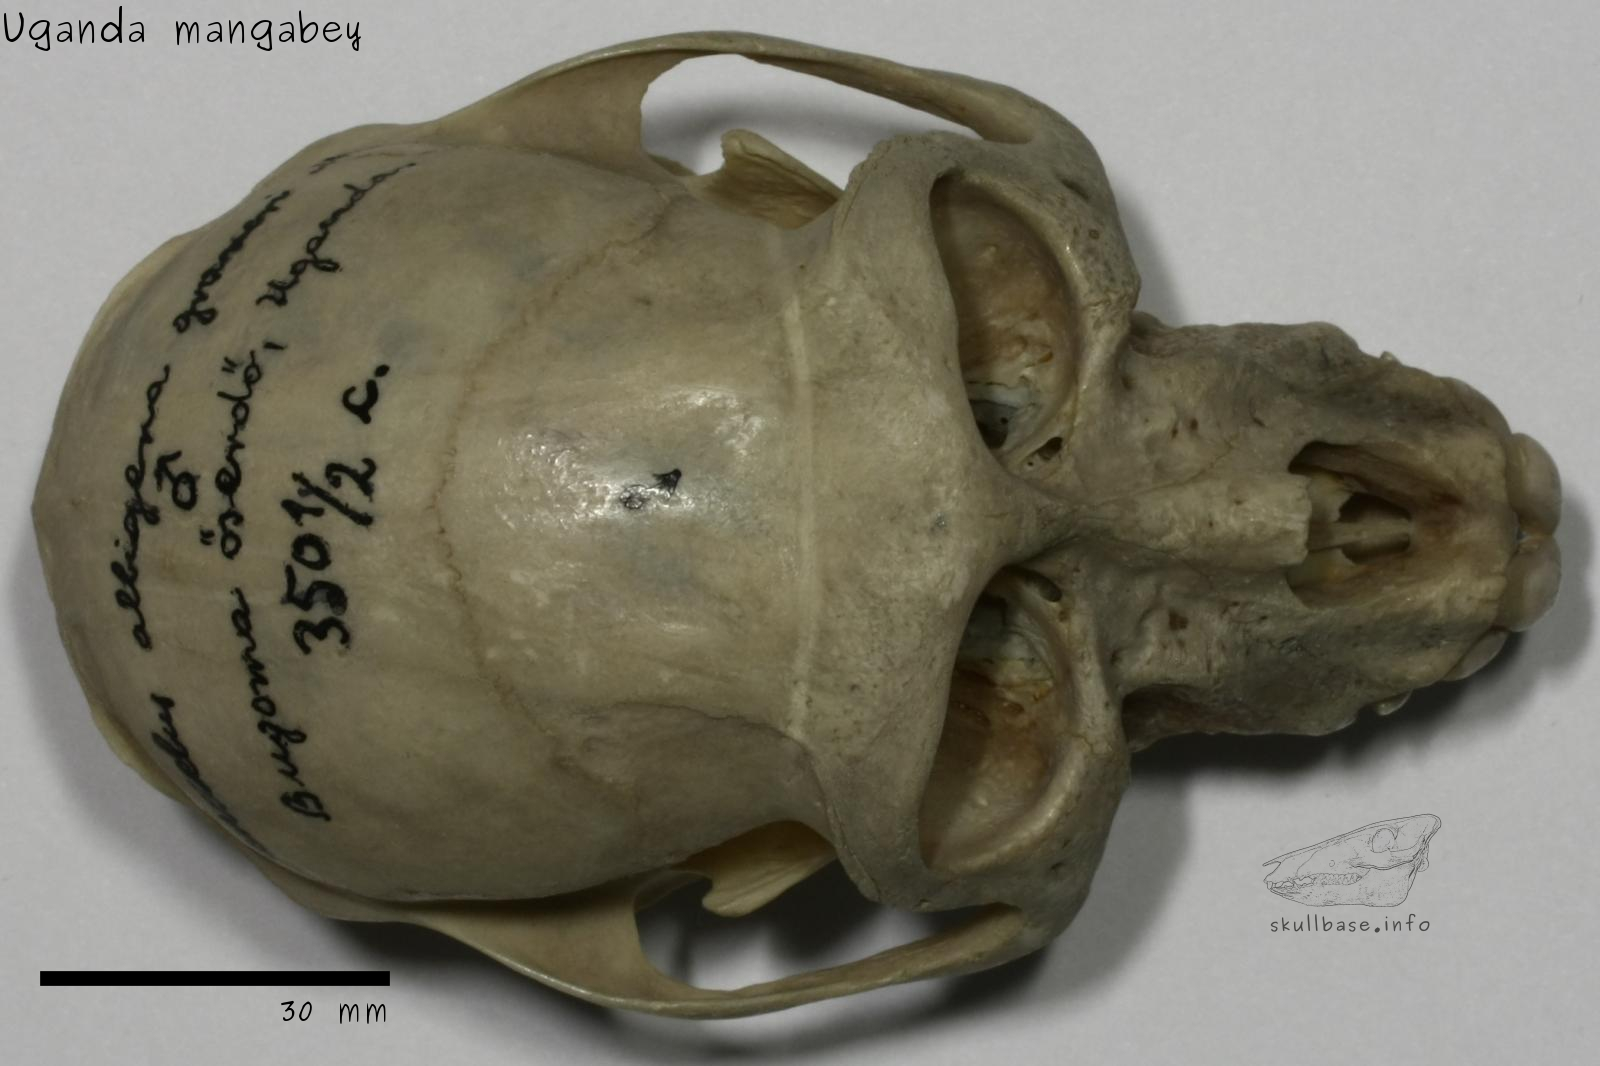 Uganda mangabey (Lophocebus ugandae) skull dorsal view